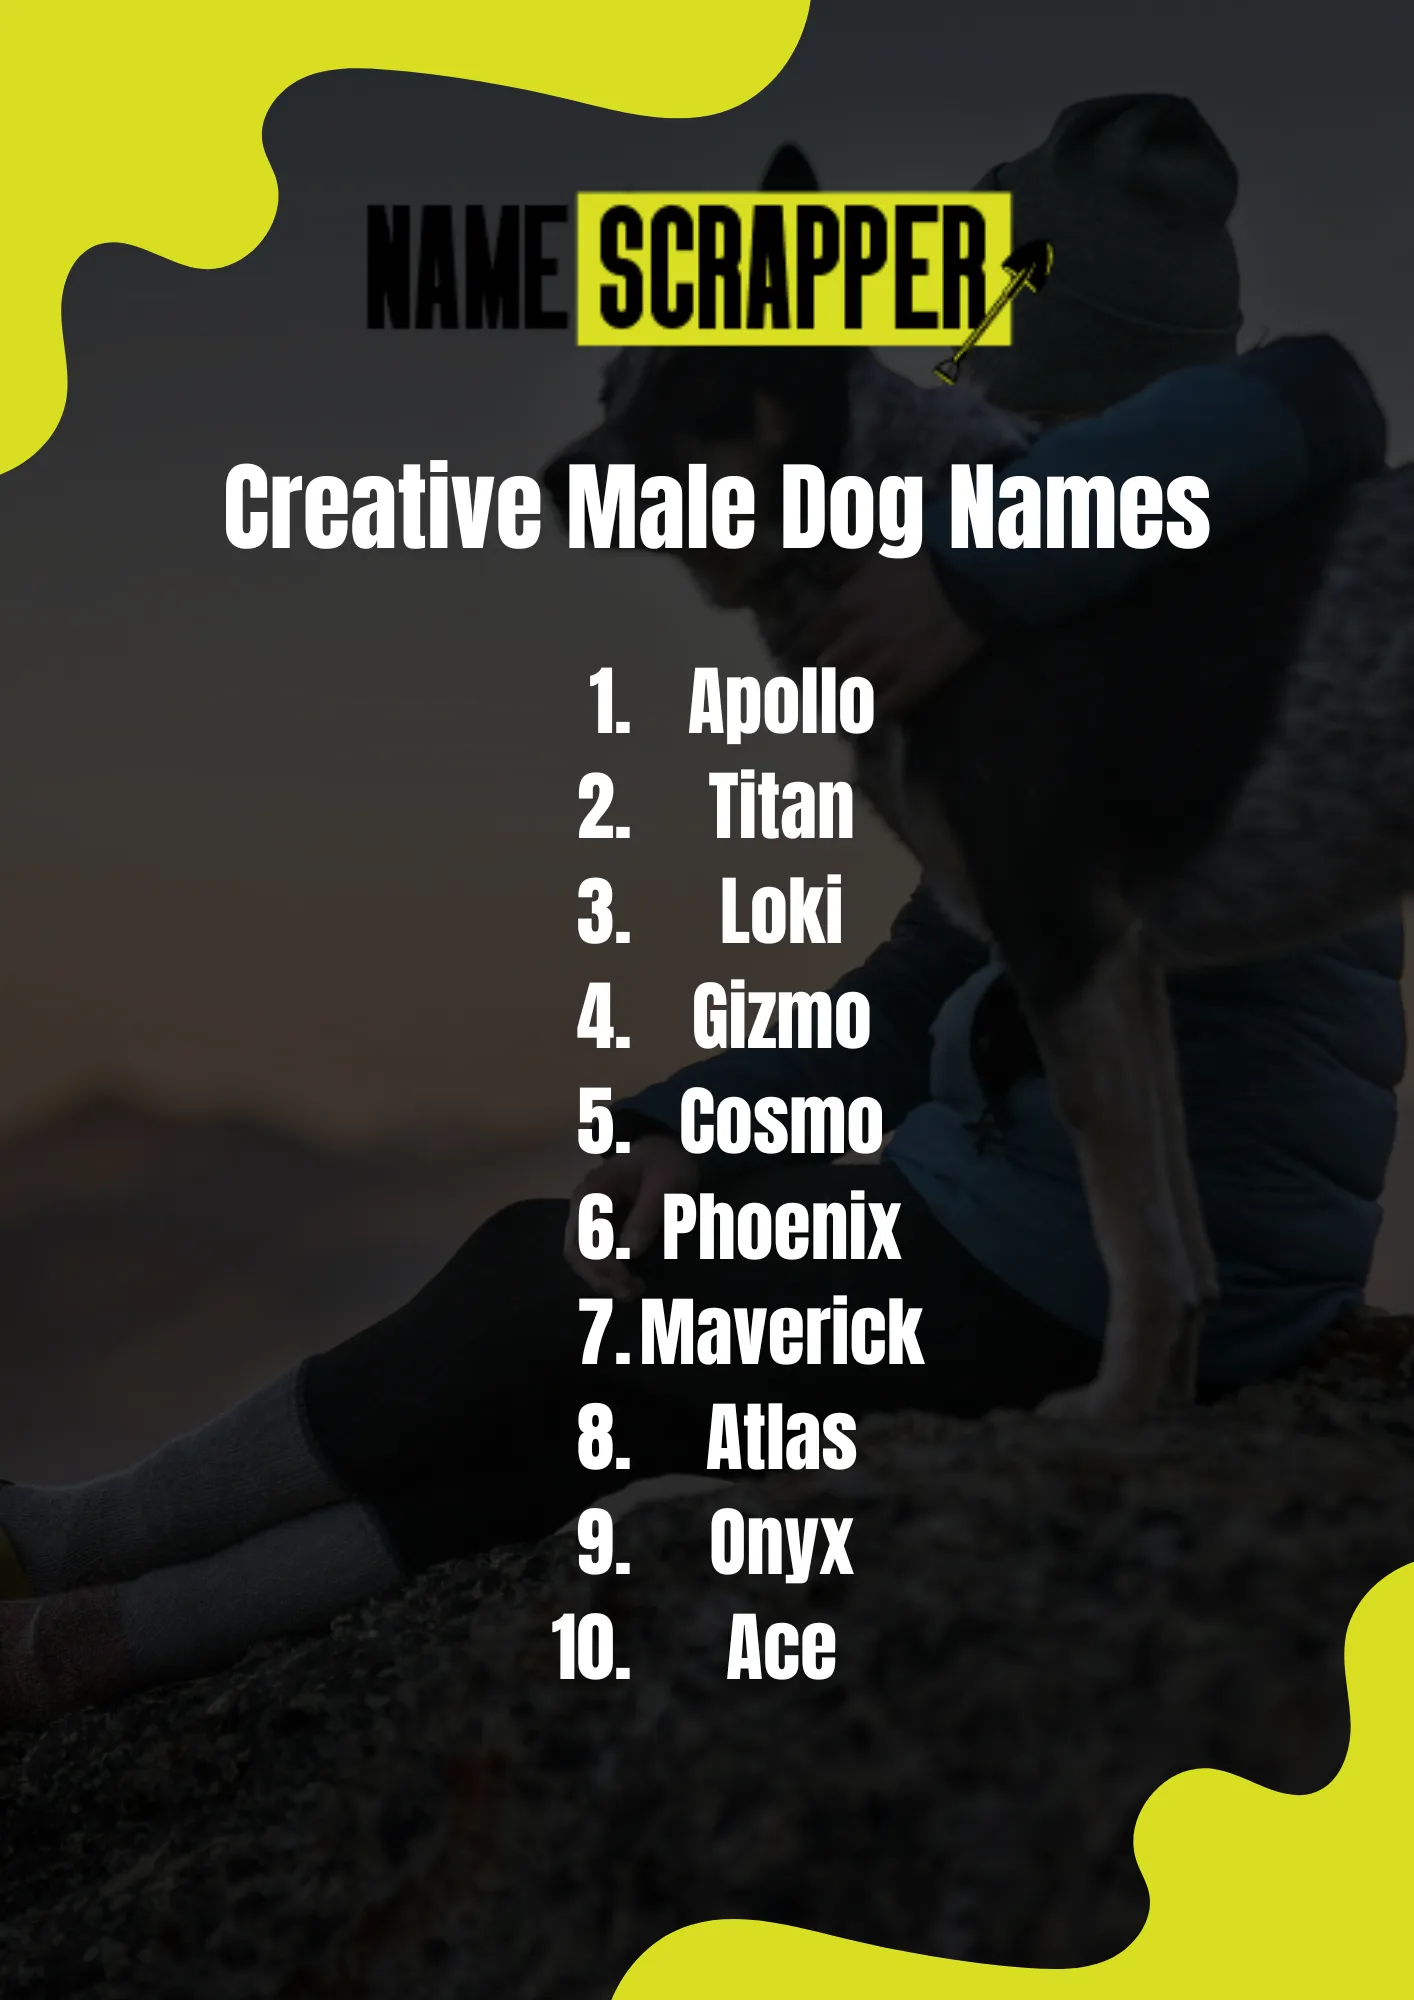 Creative Male Dog Names